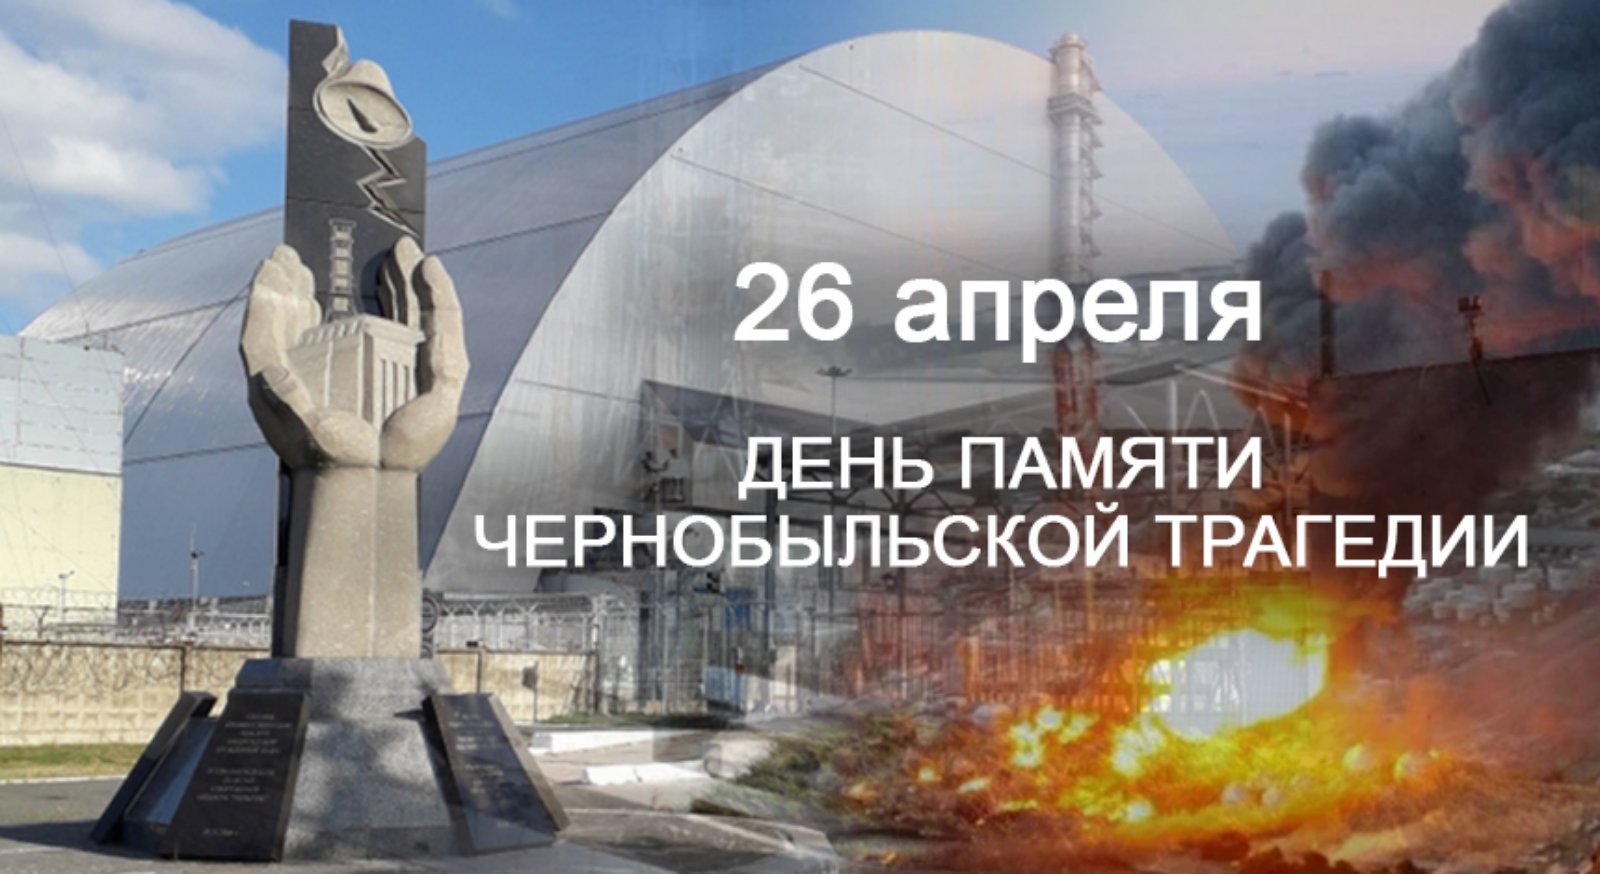 26 апреля — День памяти Чернобыльской трагедии